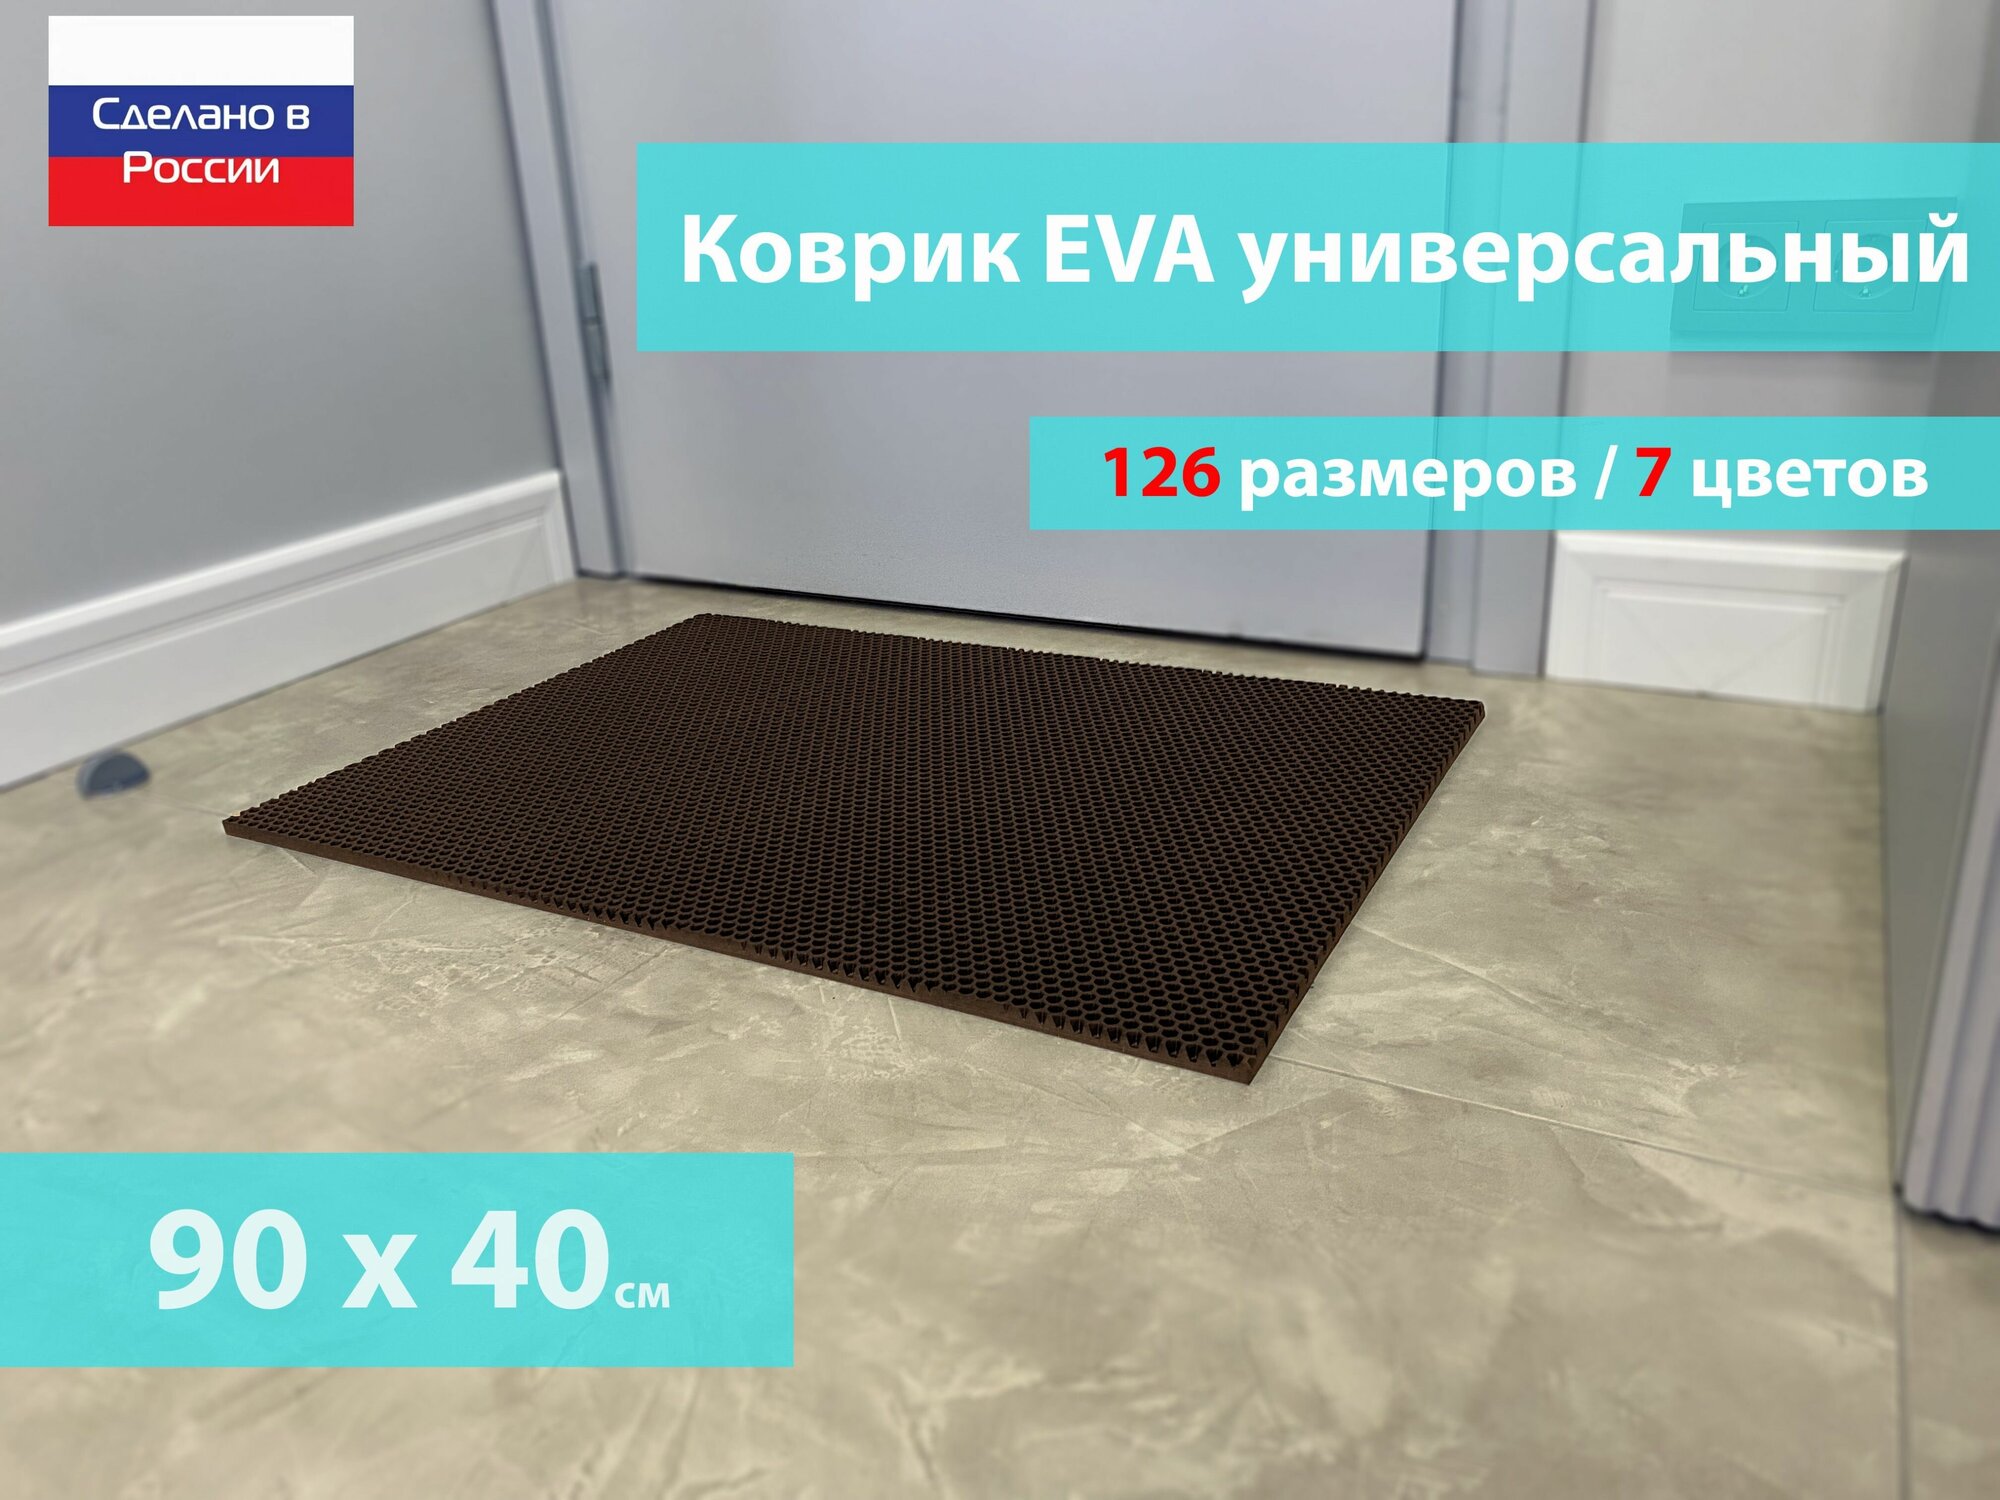 Коврик придверный EVA (ЕВА) в прихожую для обуви / Ковер ЭВА на пол перед дверью/ коричневый / размер 90 х 40 см - фотография № 1